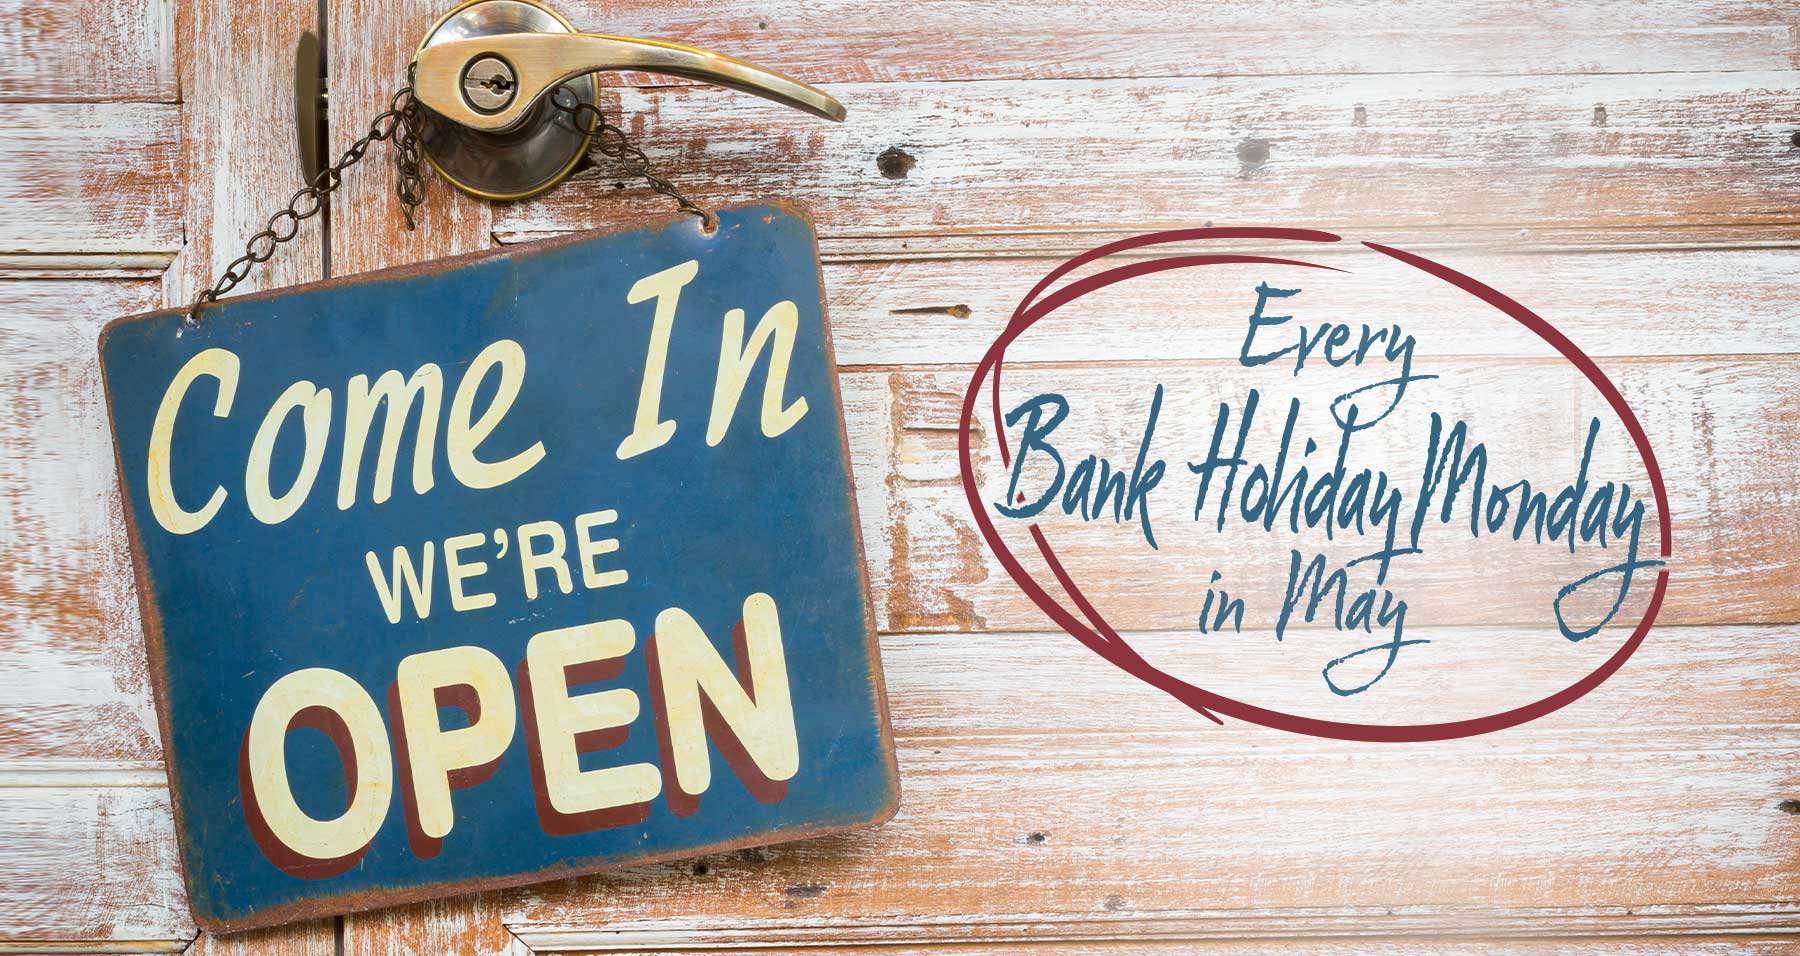 Earnshaws open every May bank holiday